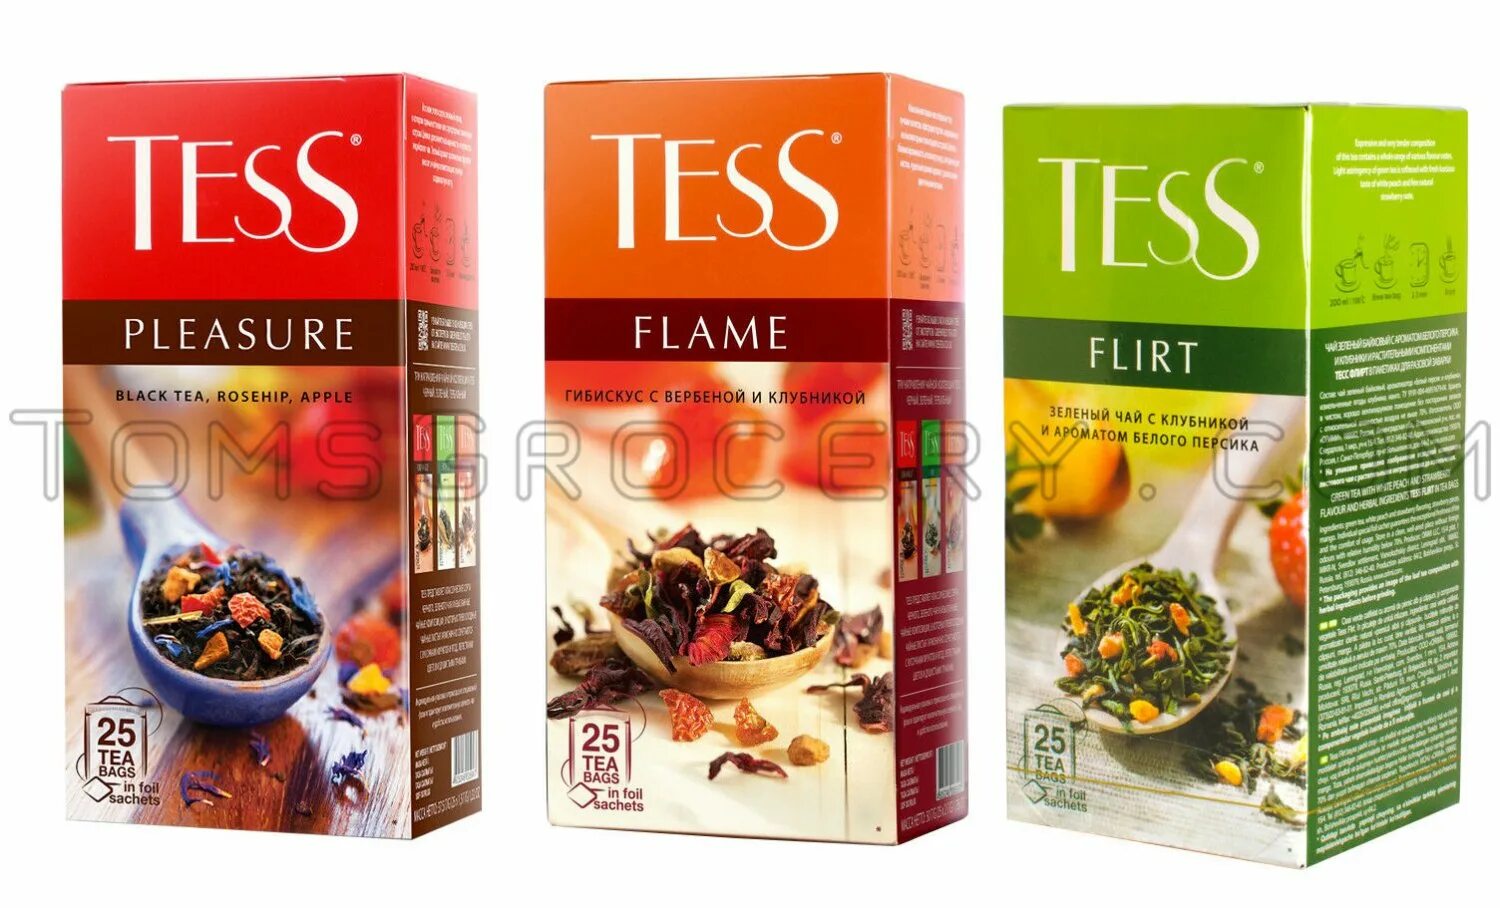 Чай tess шт. Чай Tess Tea Bag. Чай Tess Black Tea Rosehip Apple упаковка. Tess Tea 25 100 гр. Чай Тесс тропические фрукты.